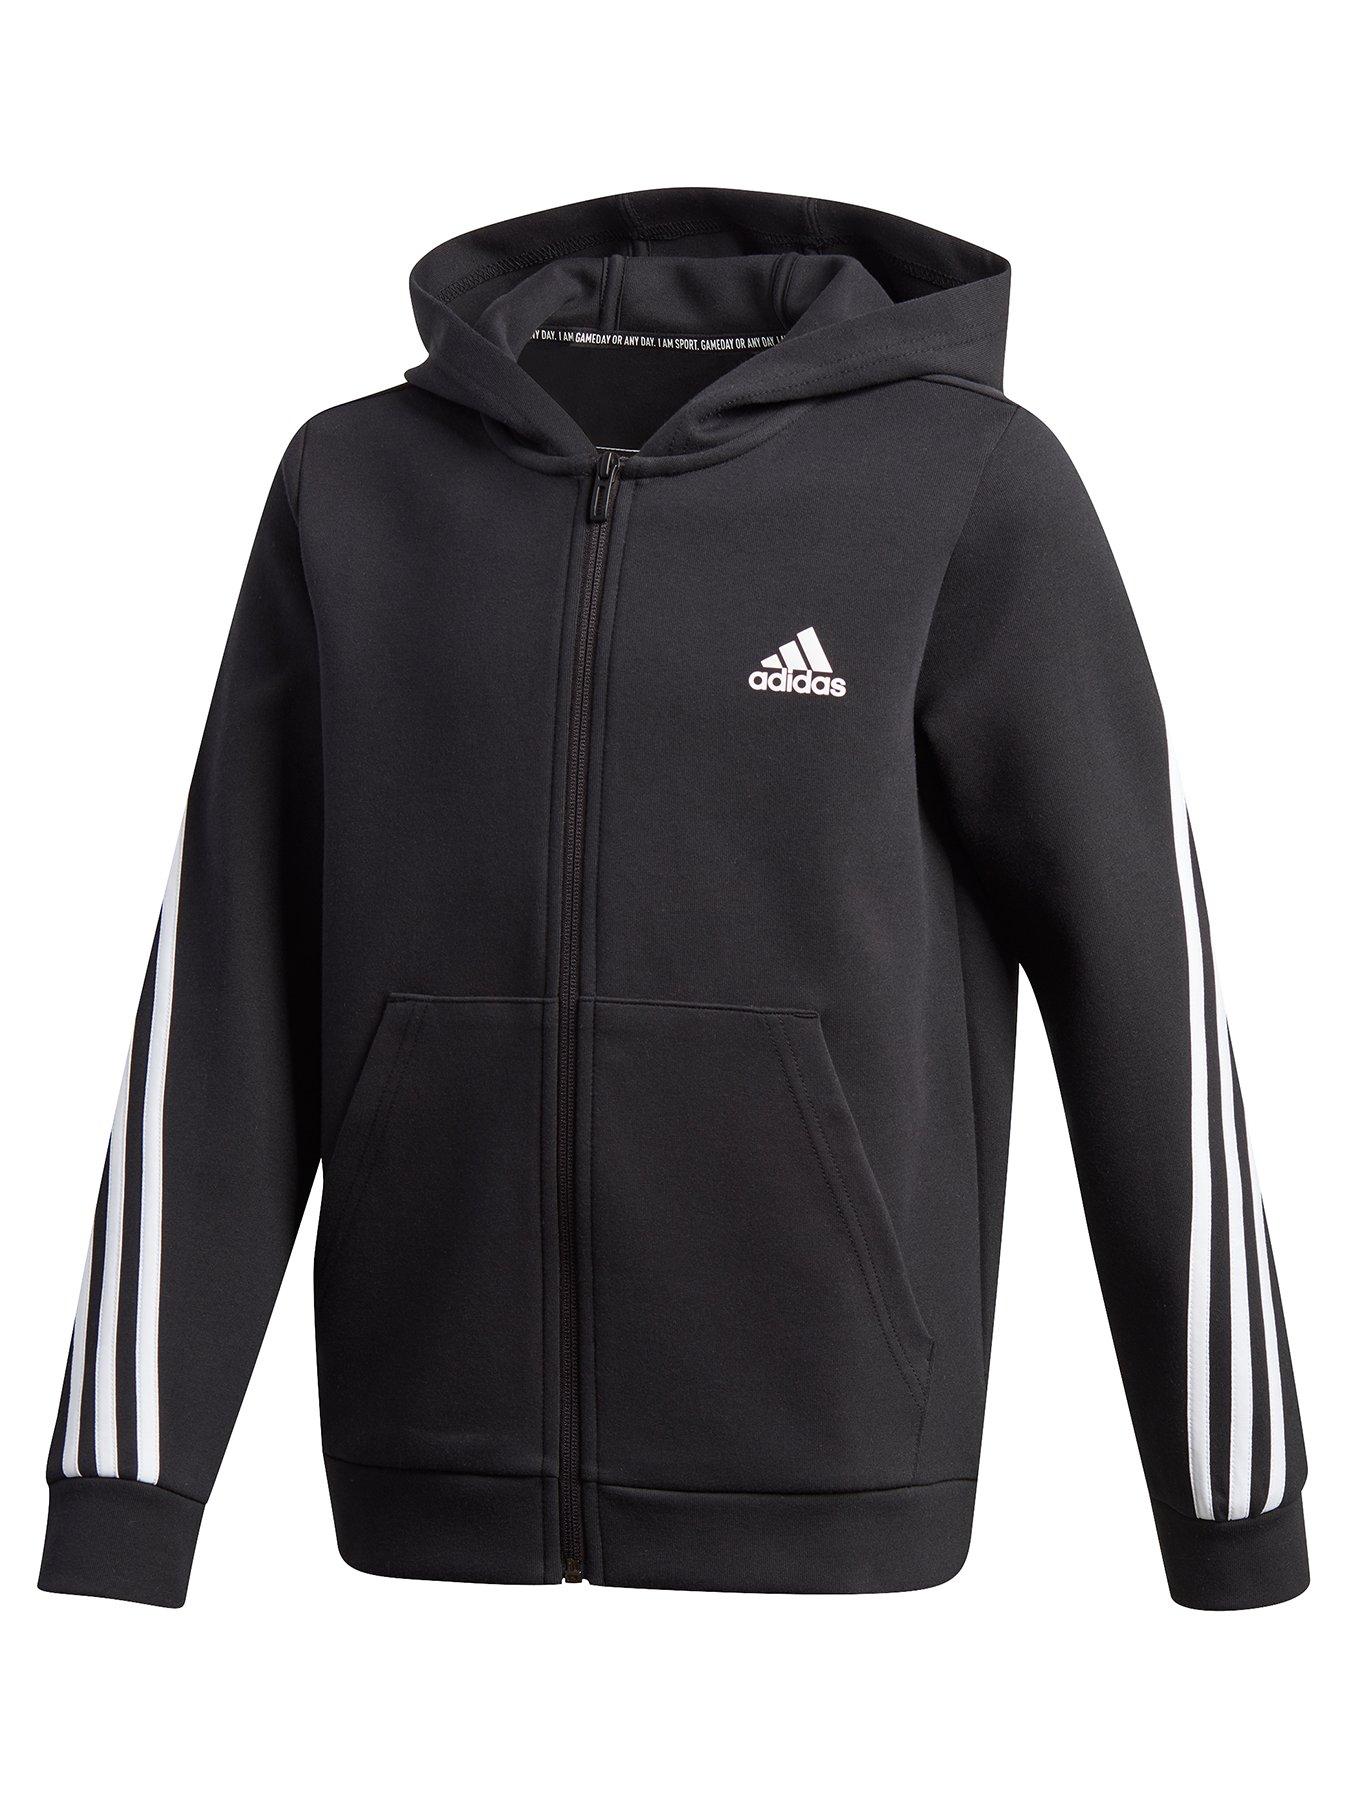 boys adidas zip up hoodie